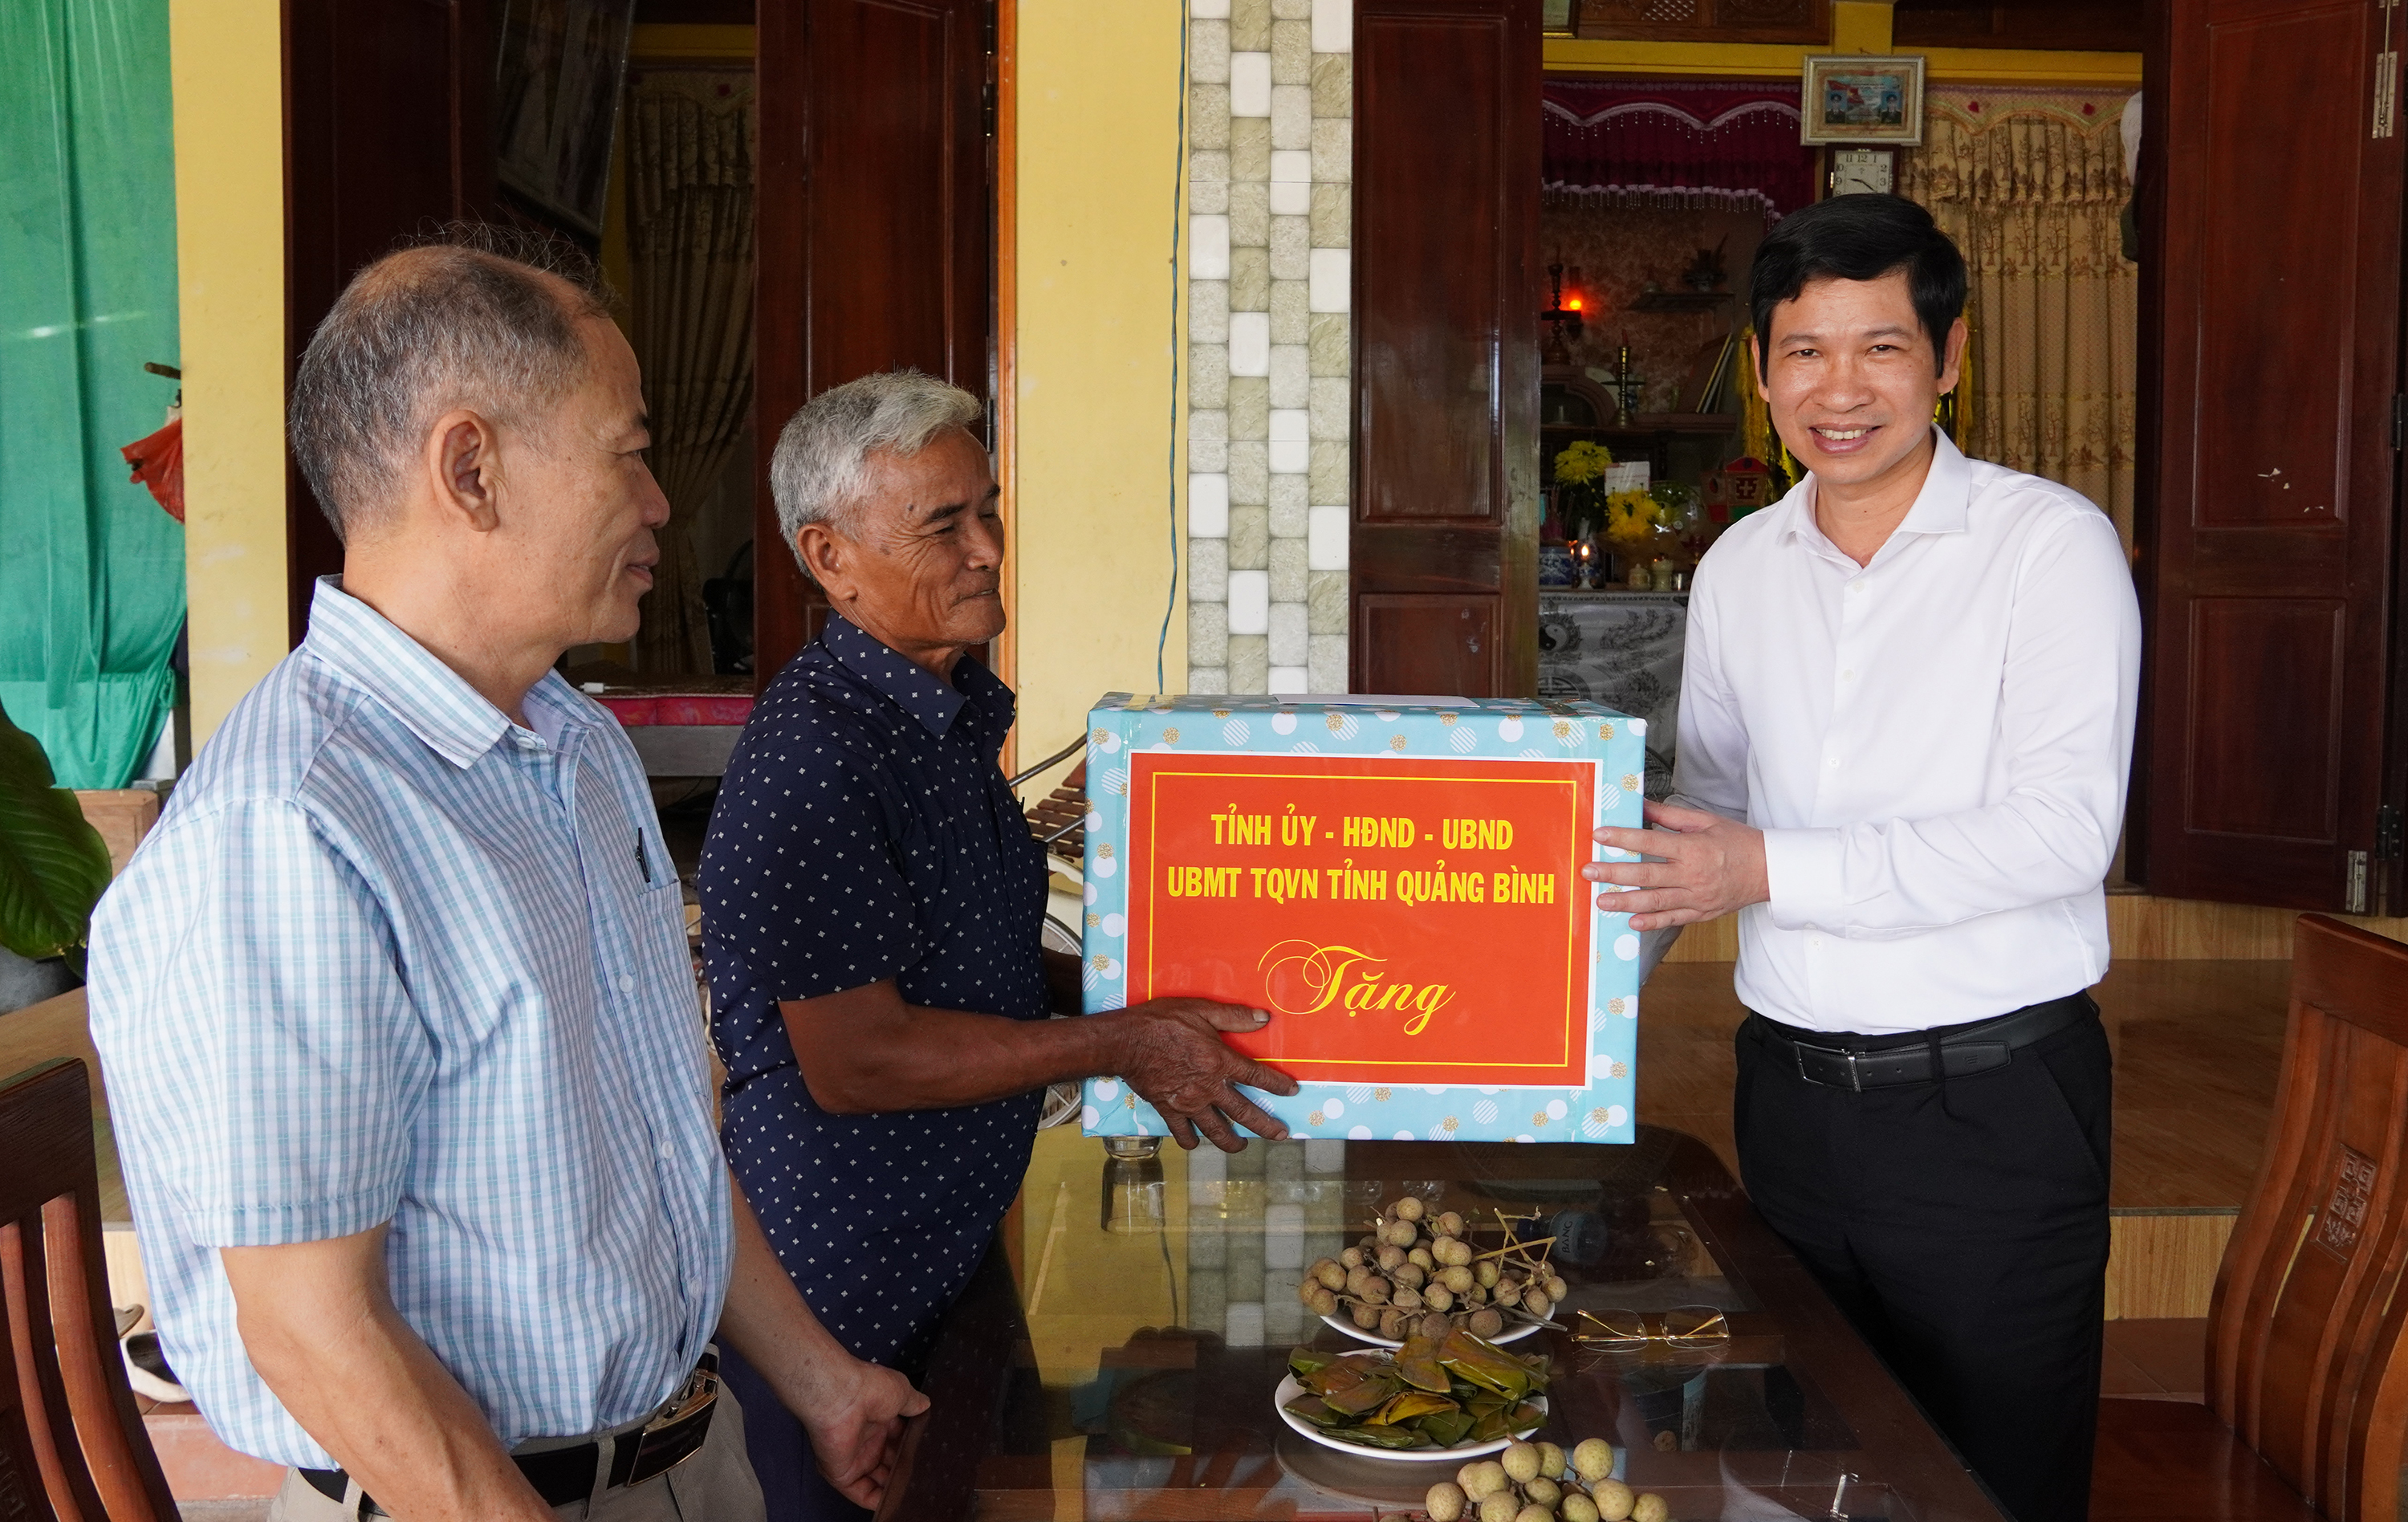 Phó Chủ tịch UBND tỉnh Hồ An Phong thăm, tặng quà cho gia đình ông Nguyễn Văn Long, thân nhân liệt sỹ, ở thôn Tân Hoà, xã Tân Thủy (Lệ Thủy).